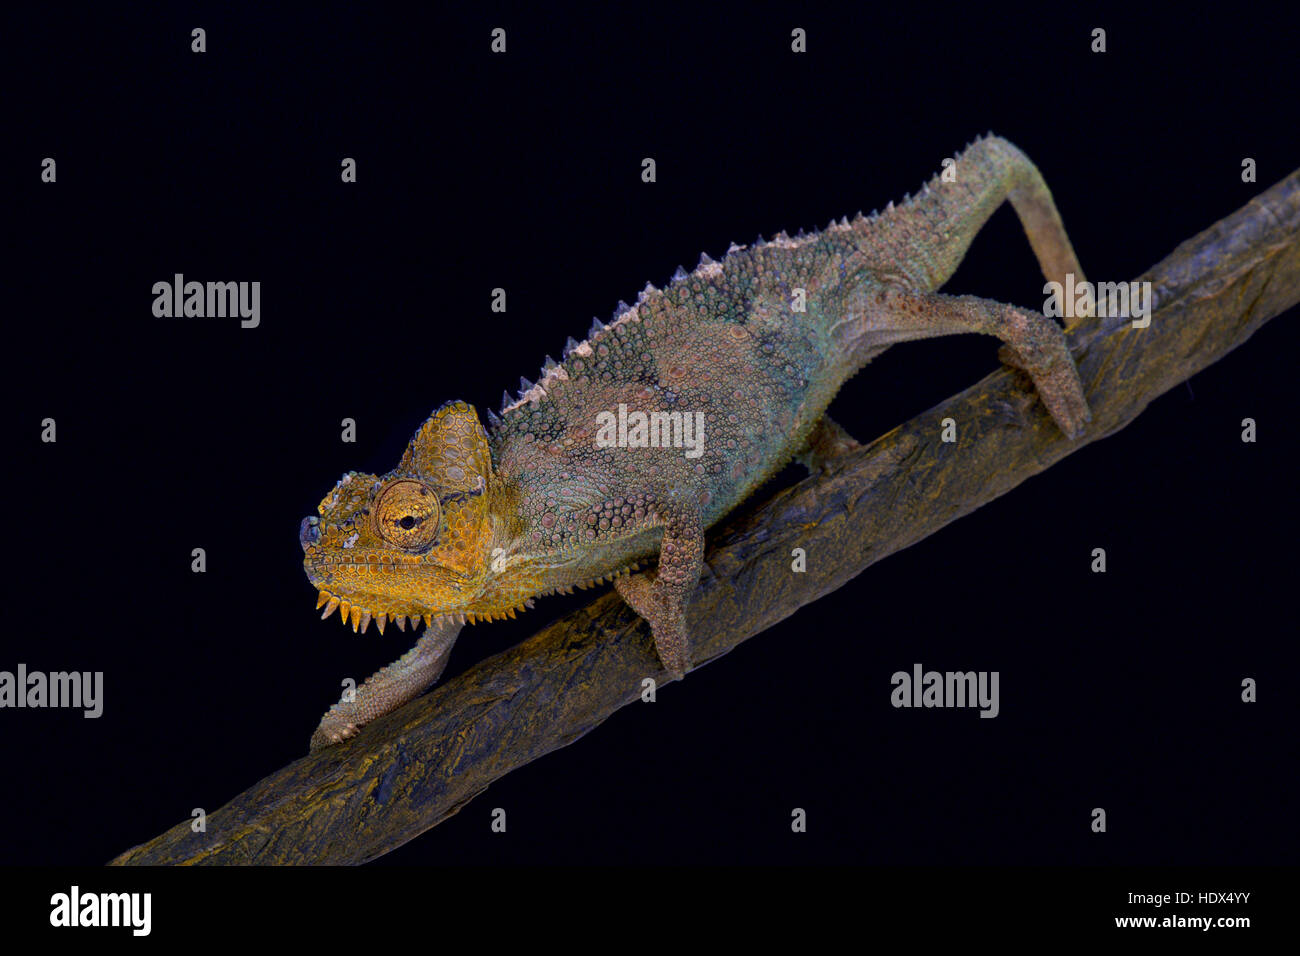 von Höhnel's chameleon, Trioceros hoehnelli, Kenya Stock Photo